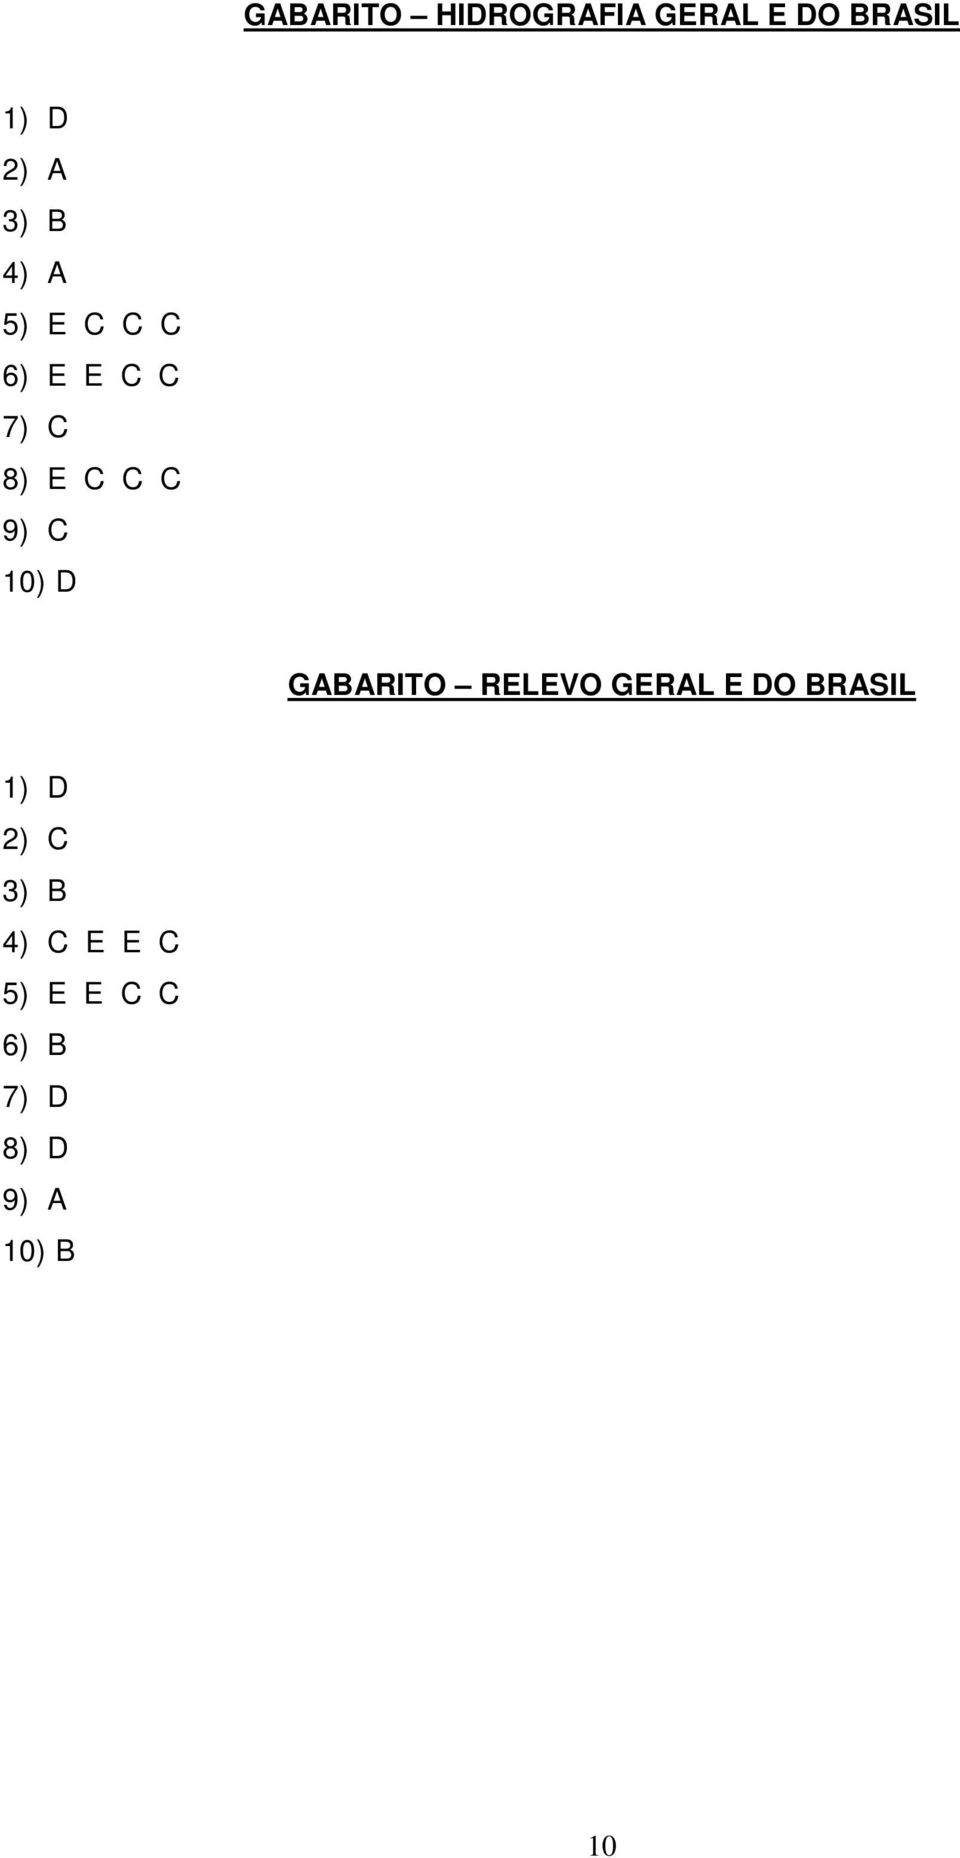 10) D GABARITO RELEVO GERAL E DO BRASIL 1) D 2) C